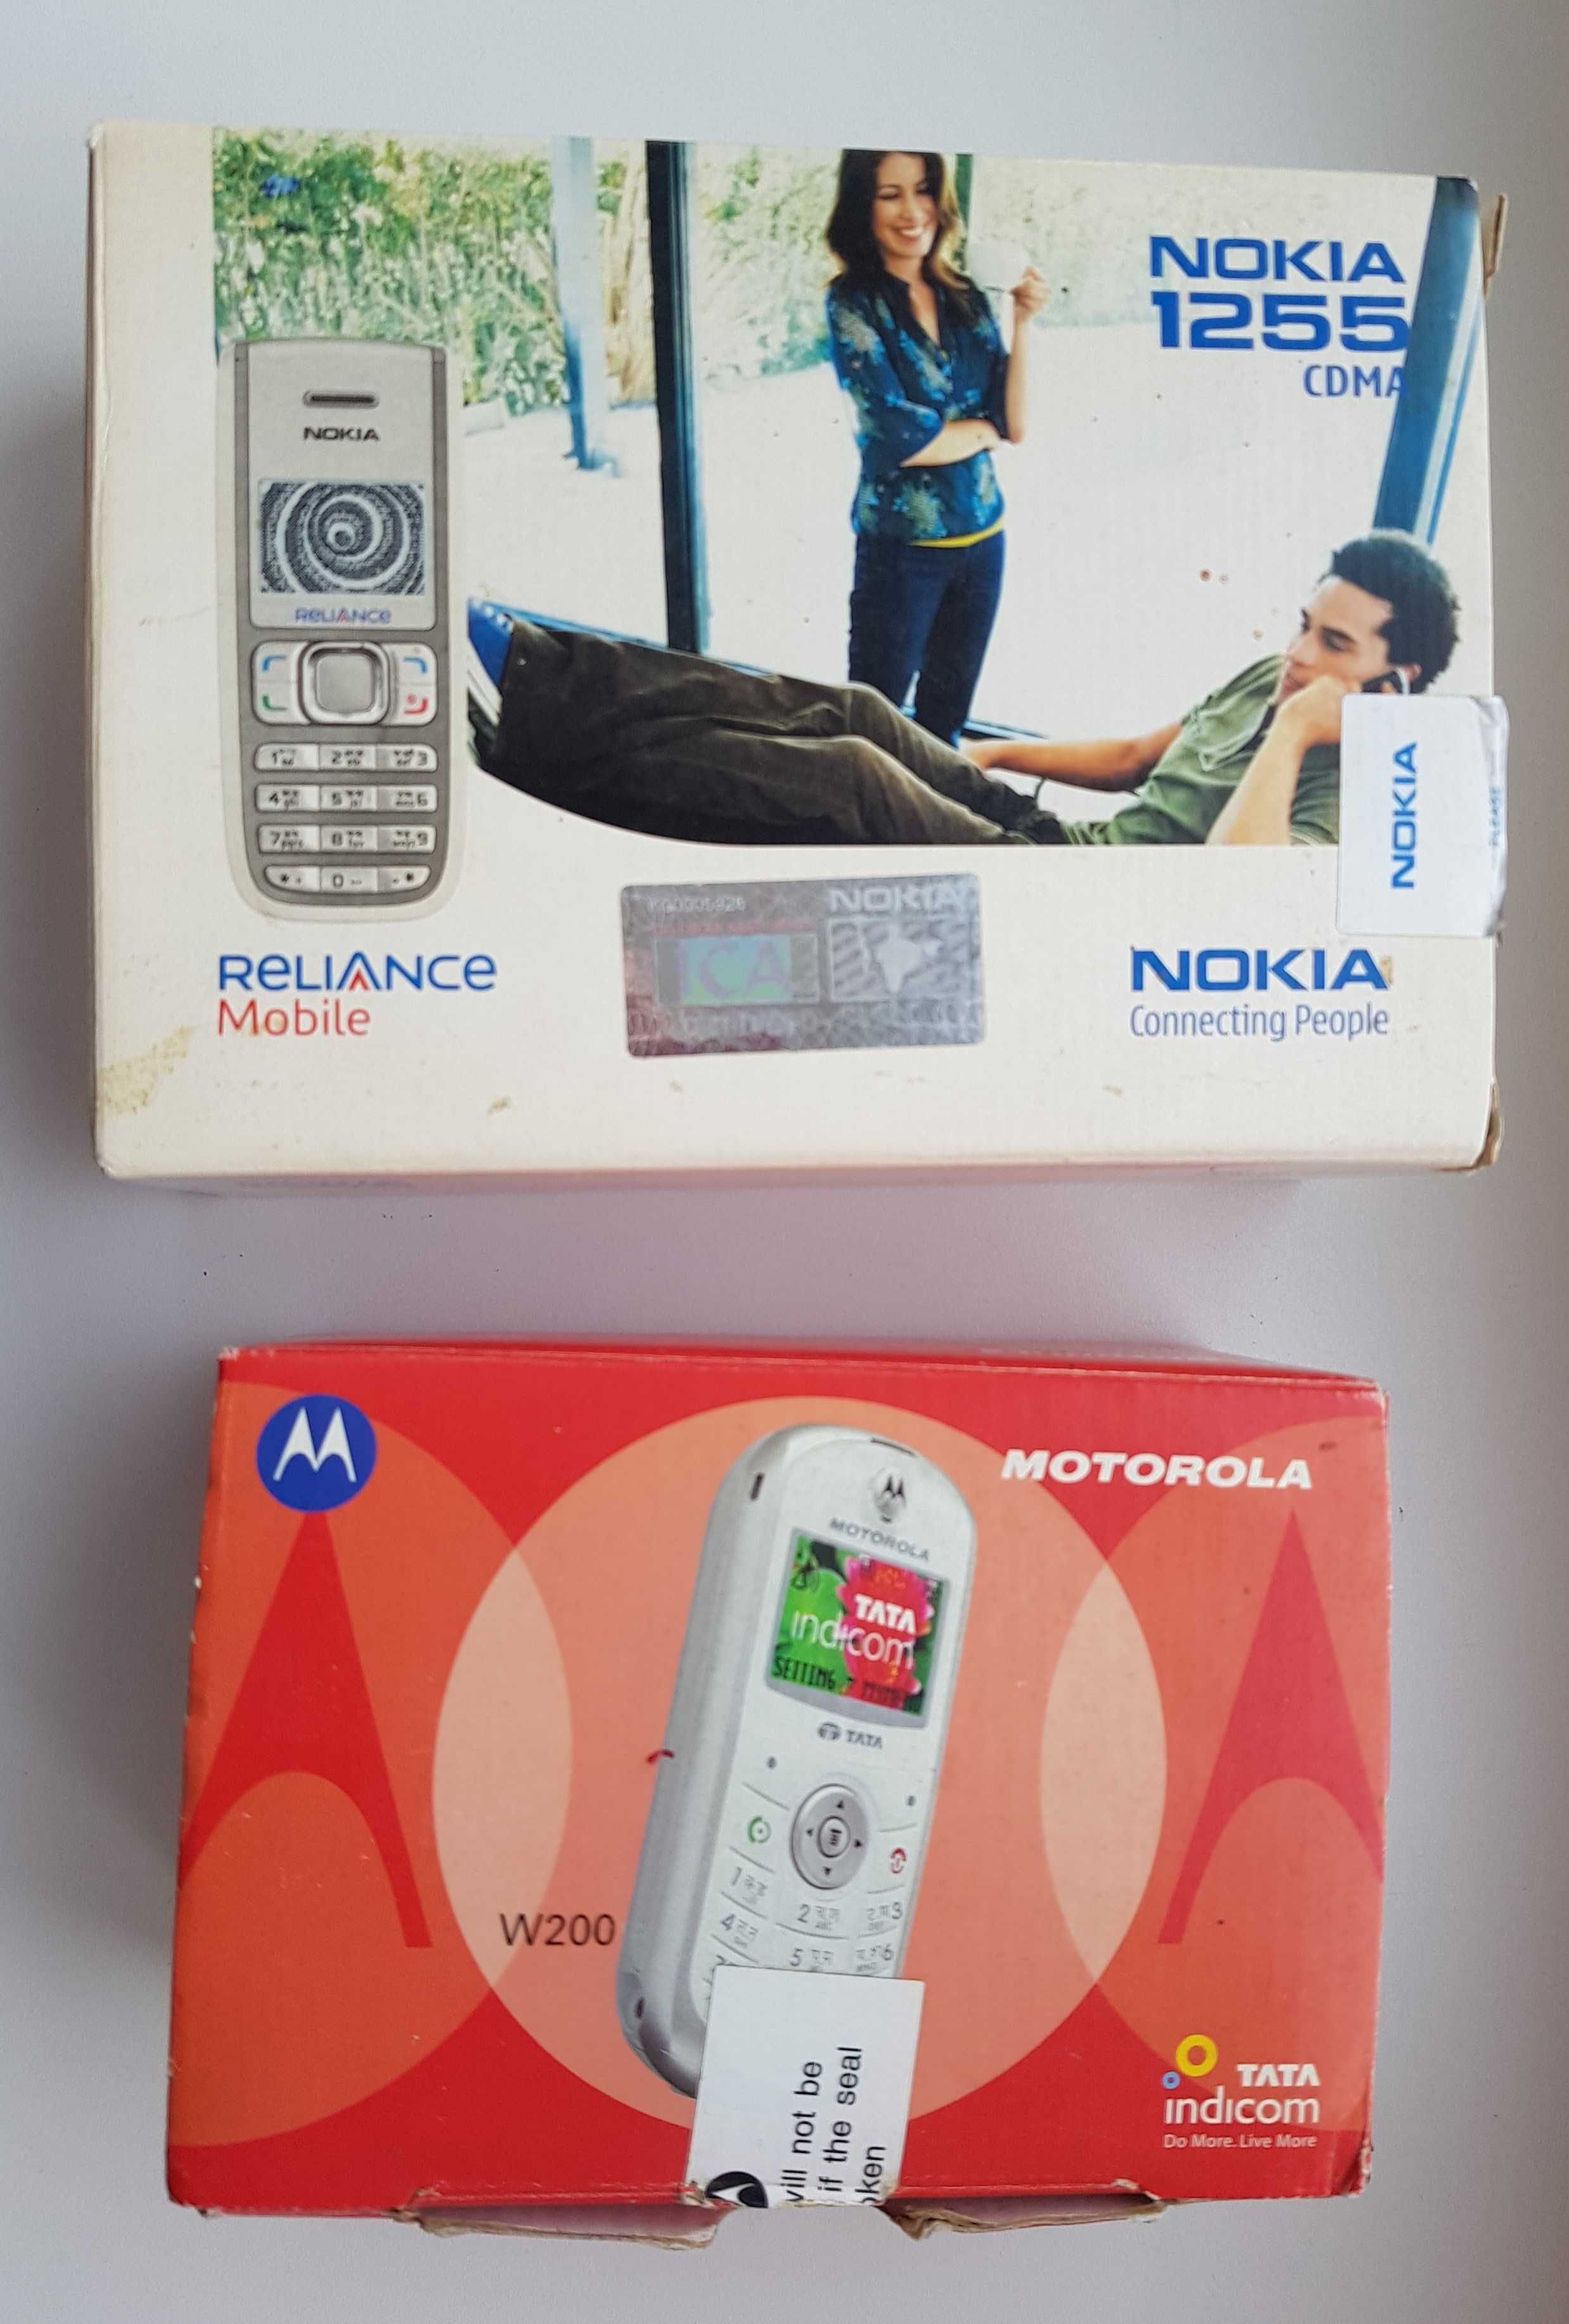 Моб. телефоны CDMA Nokia 1255, Motorola W200